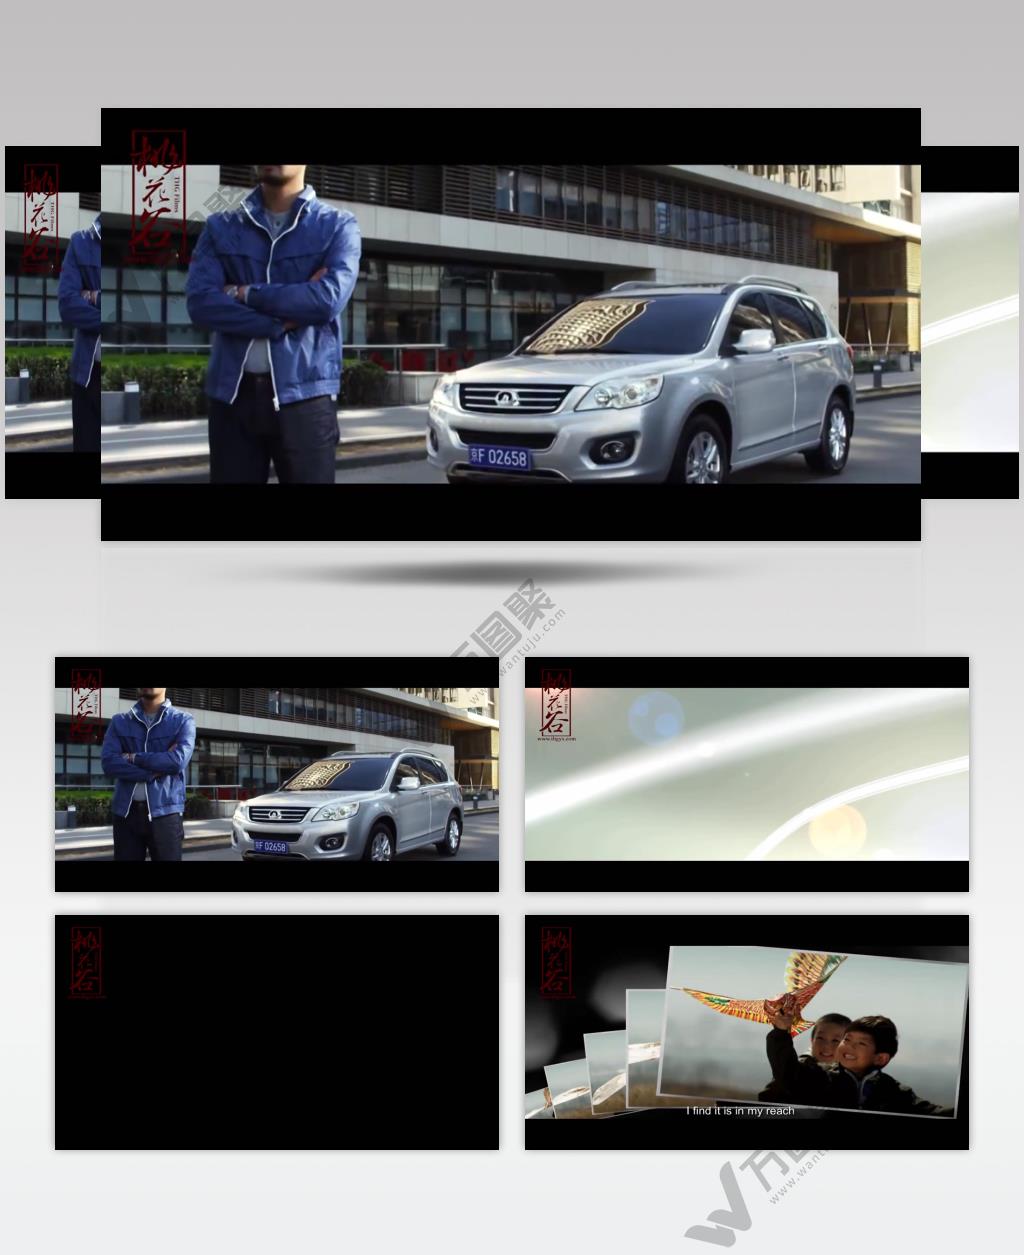 长城汽车 – 世界的长城 – 创新之路公益宣传片-台湾企业宣传片